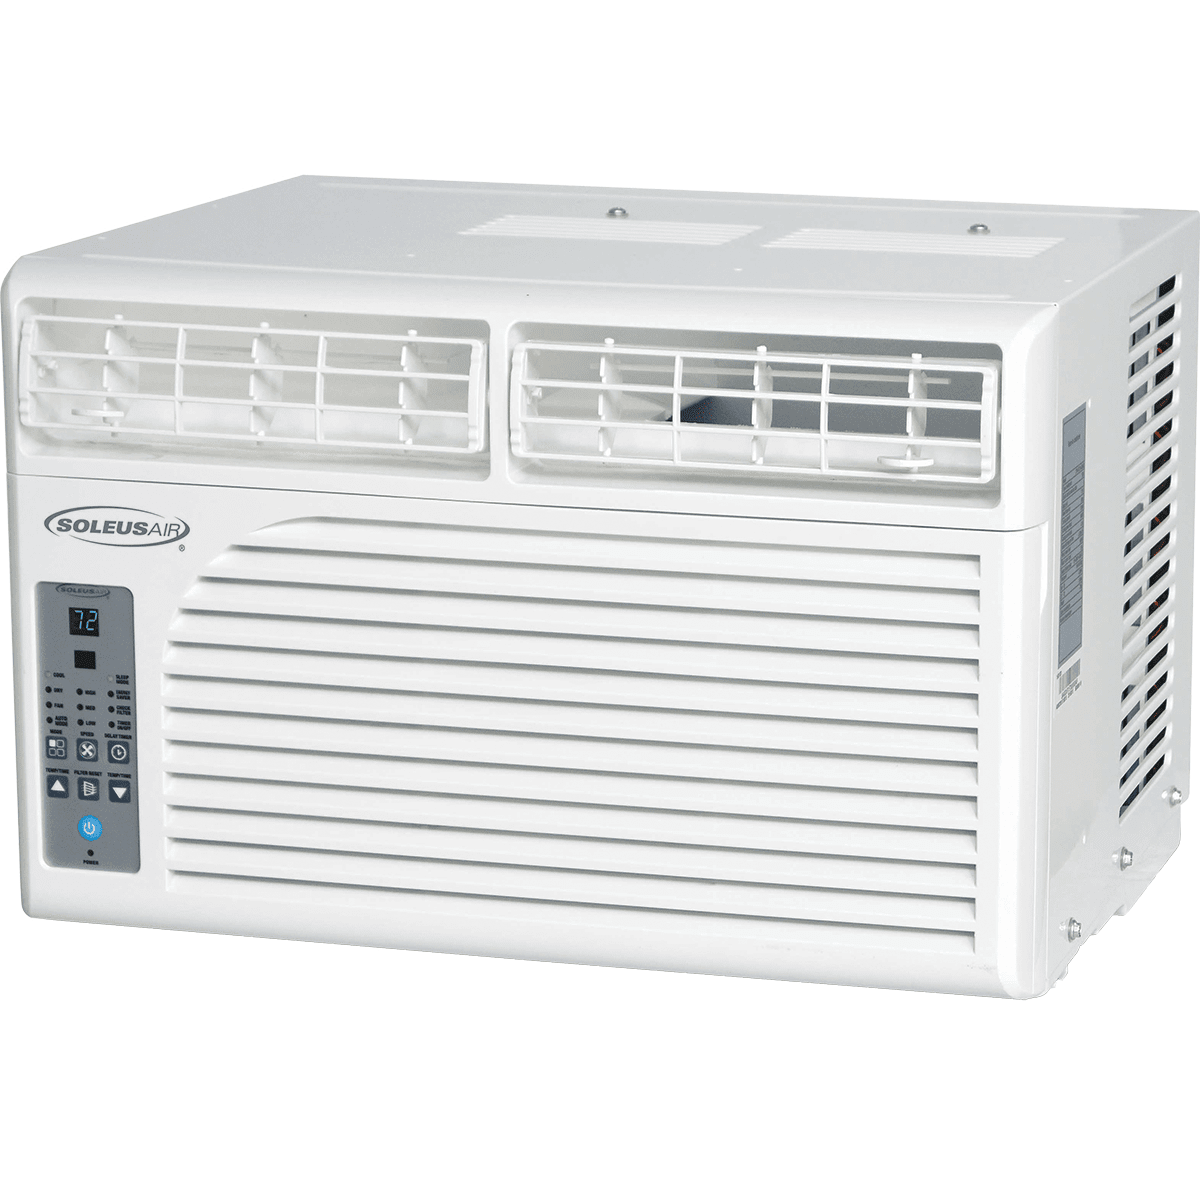 Soleus Air 10,200 Btu Window Air Conditioner (ws1-10e-01)